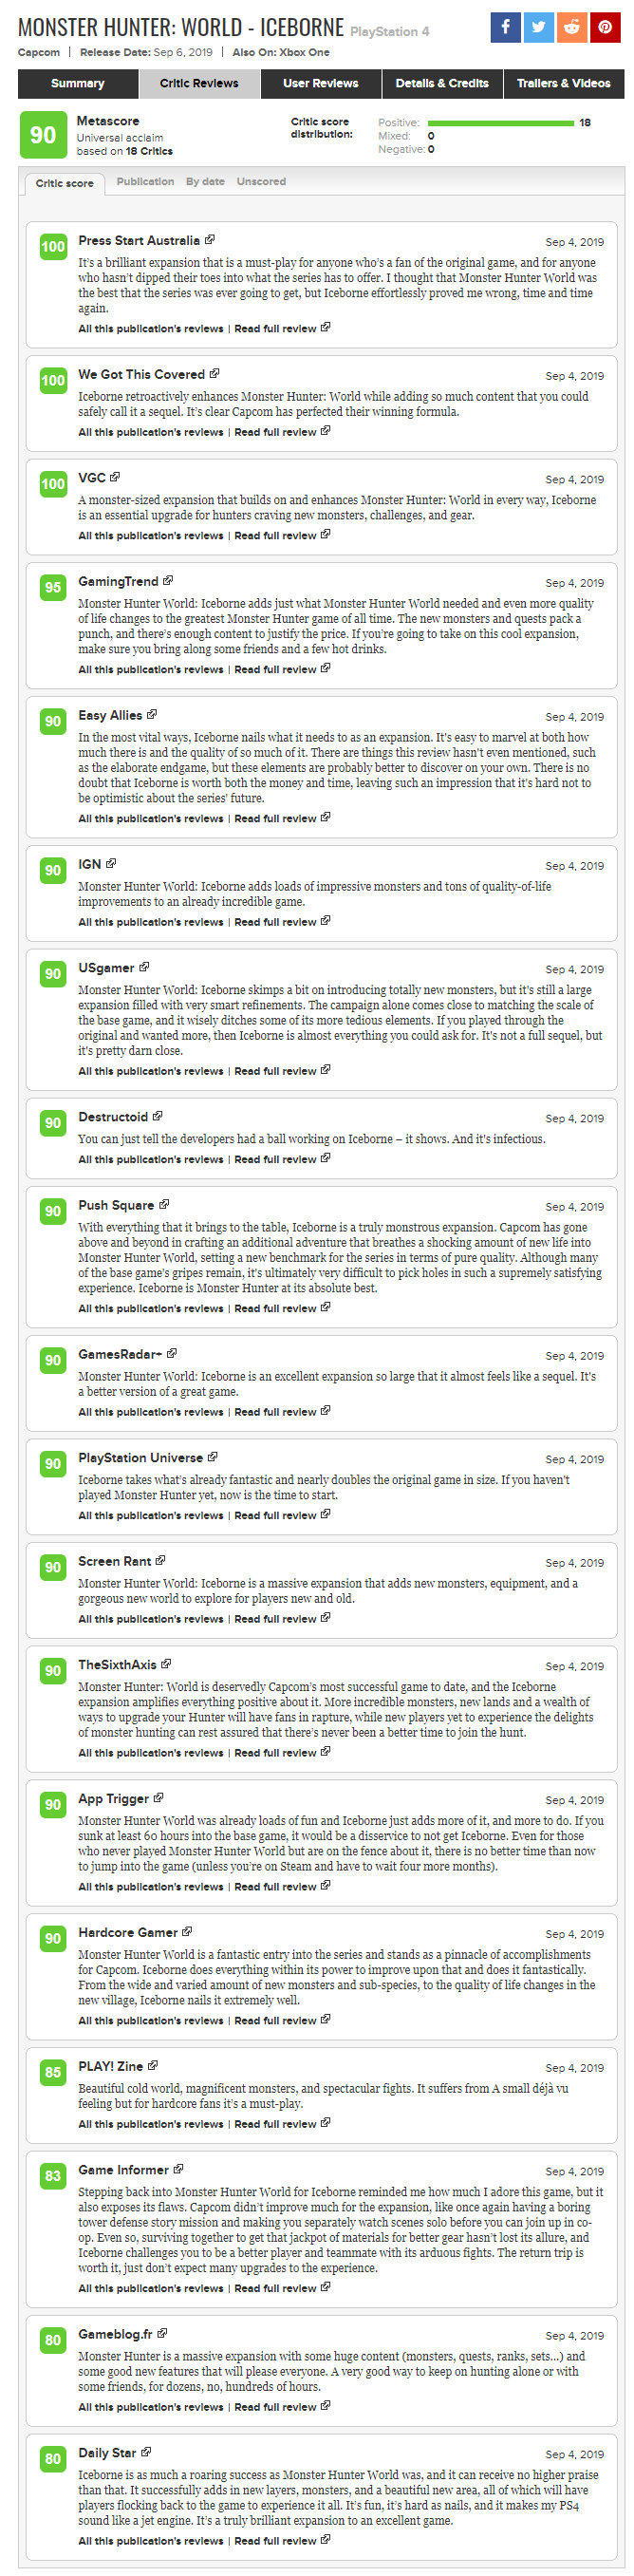 IGN9分编辑之选 《怪物猎人世界：冰原》媒体评分出炉